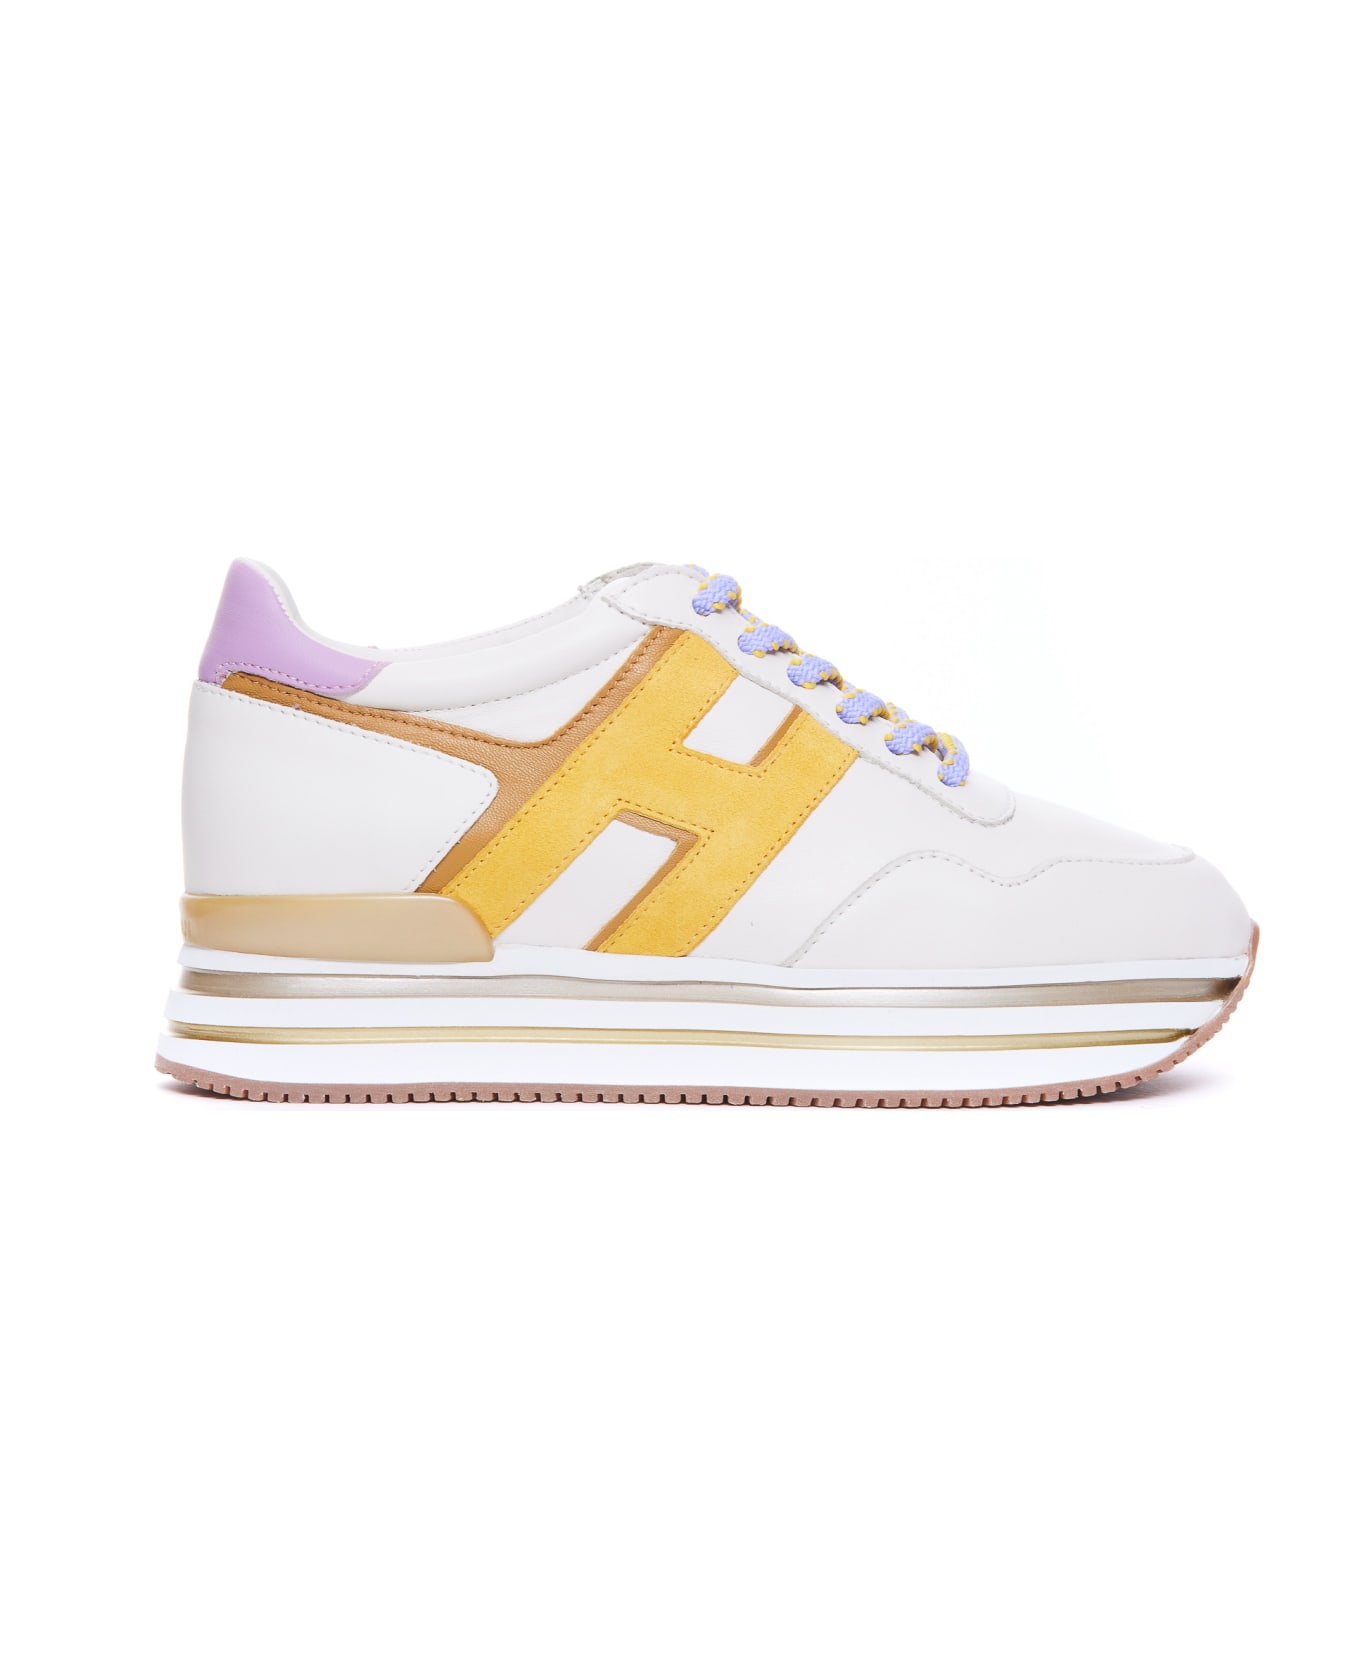 Hogan H222 Sneakers - White スニーカー